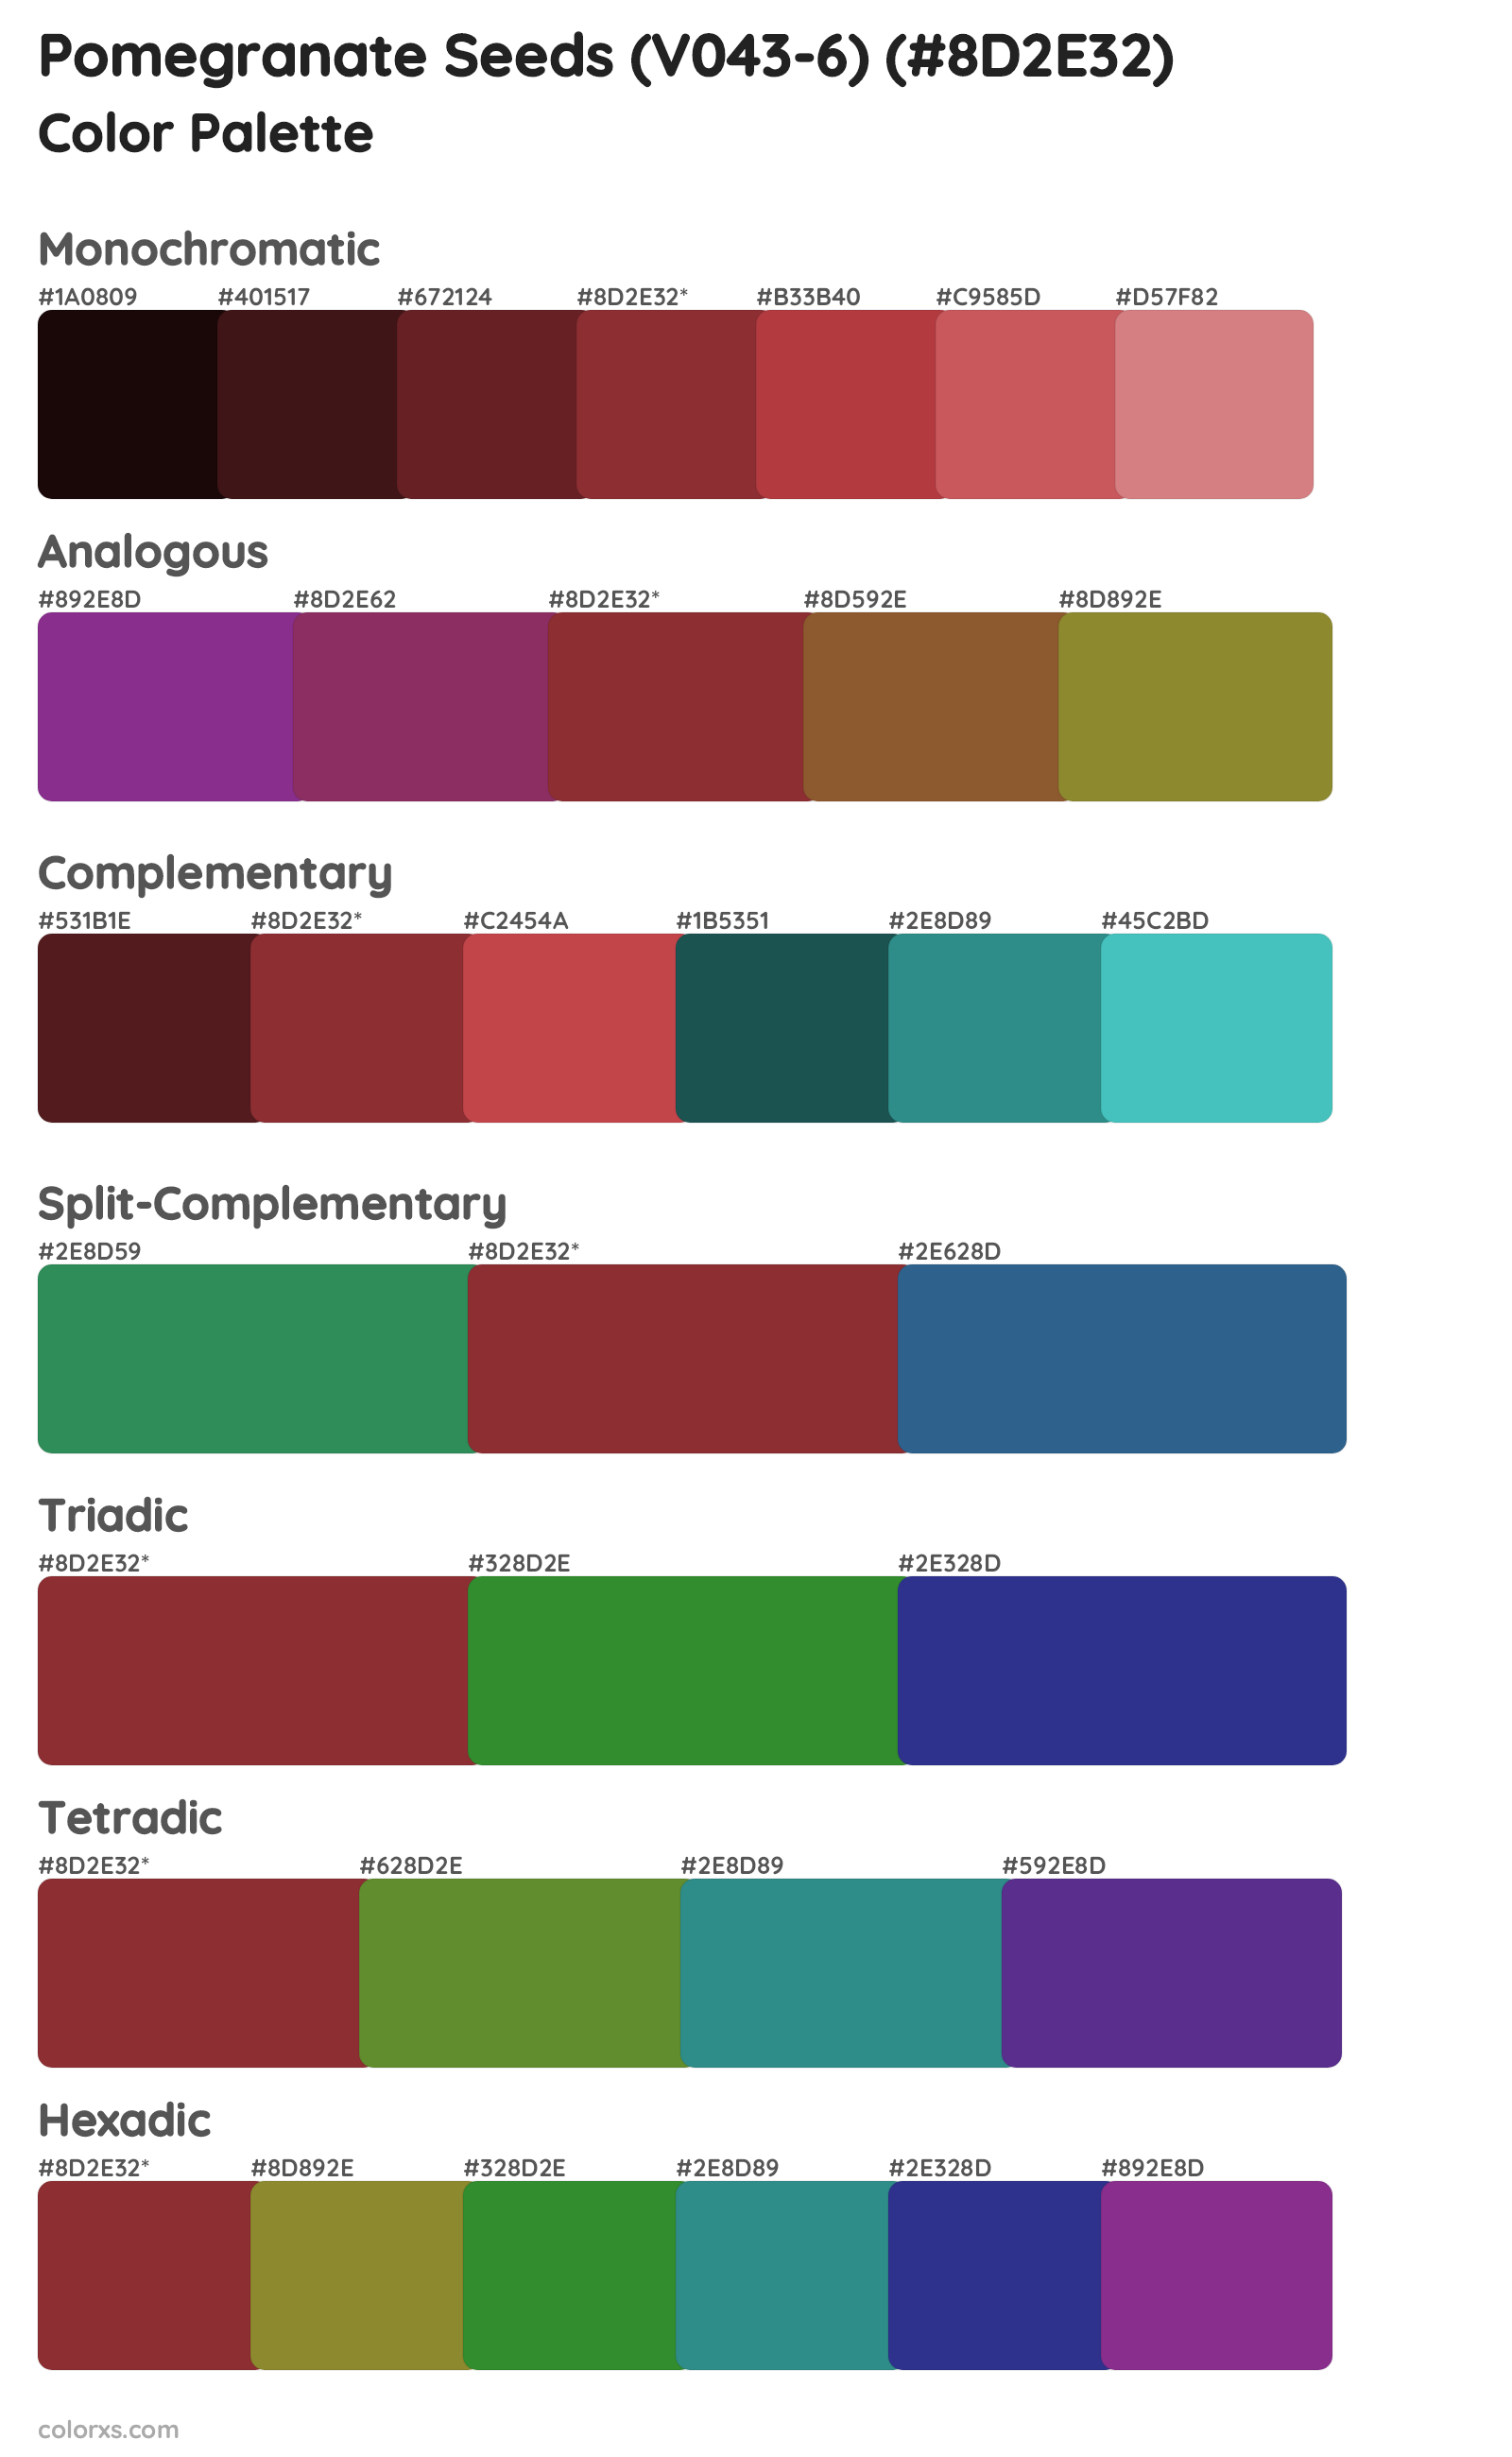 Pomegranate Seeds (V043-6) Color Scheme Palettes